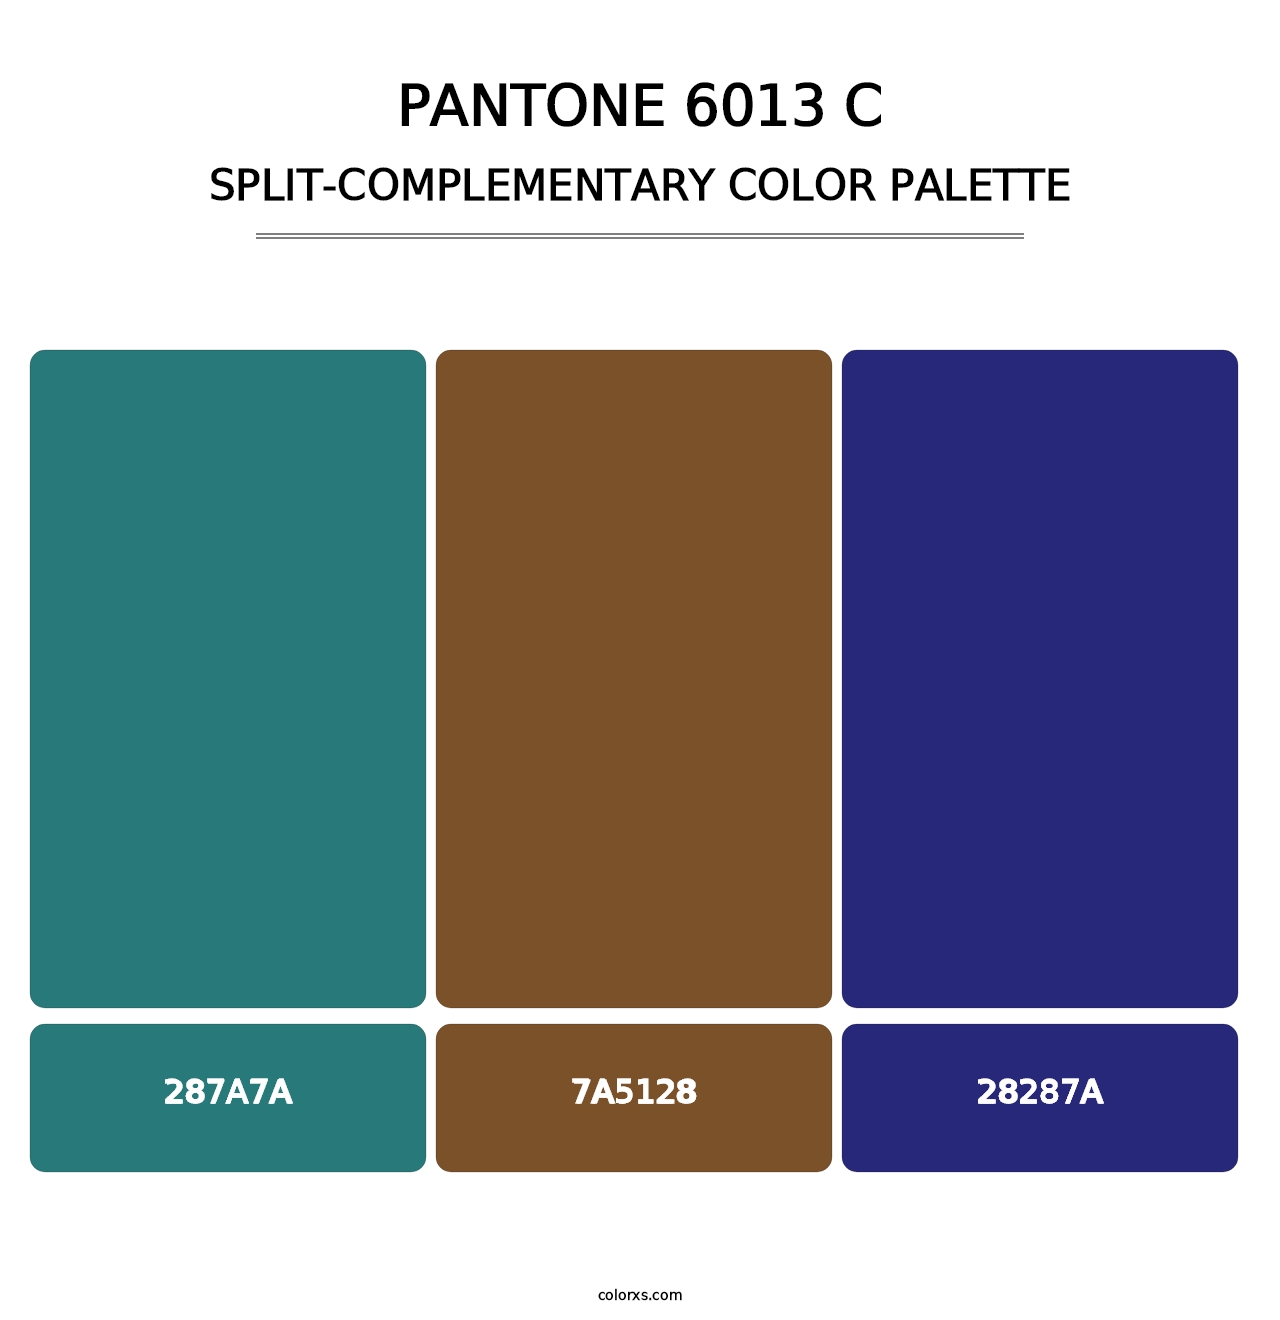 PANTONE 6013 C - Split-Complementary Color Palette